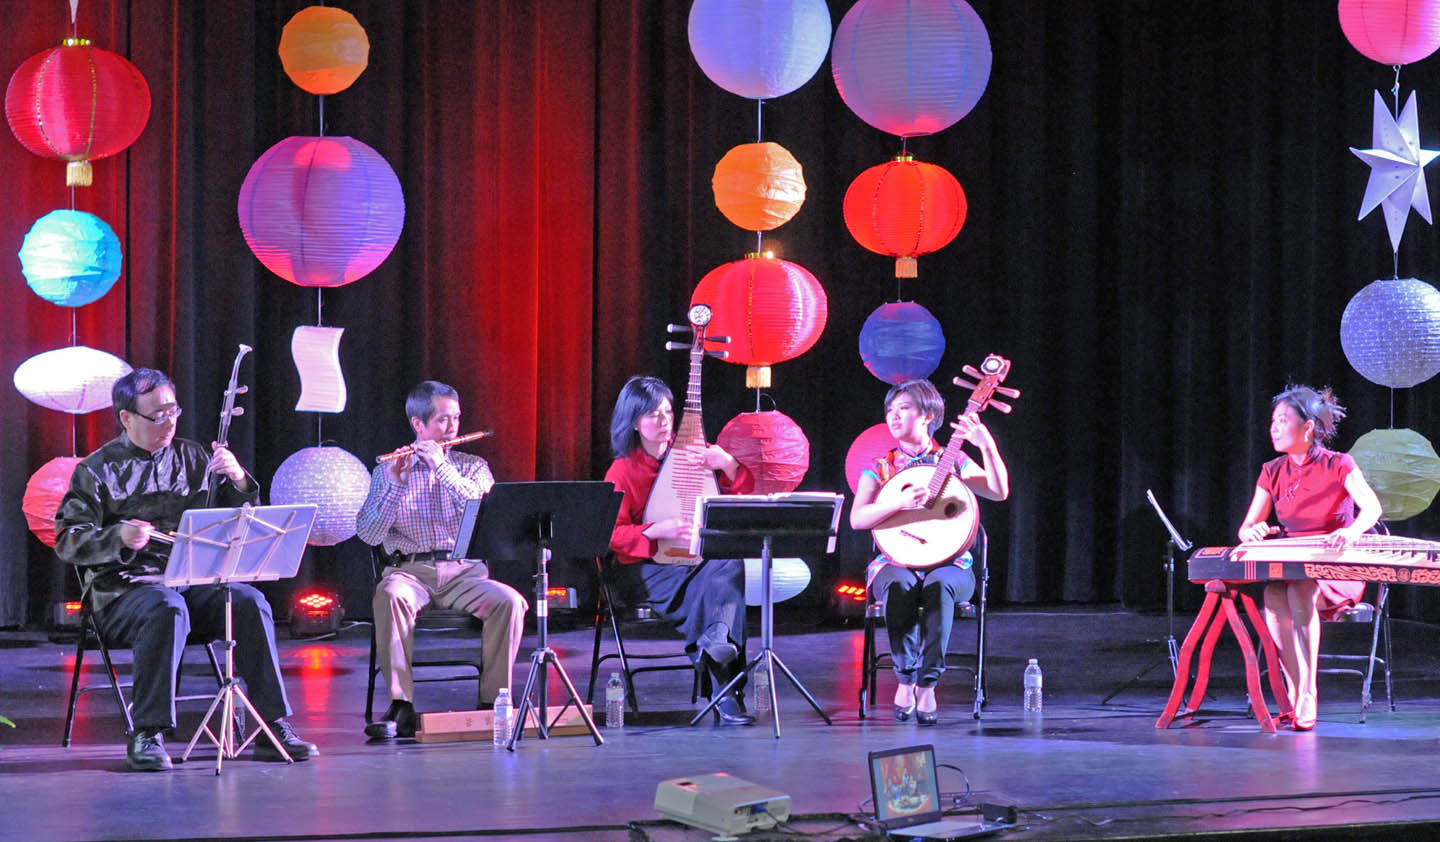 CCCC, Chinese ensemble celebrate Lantern Festival